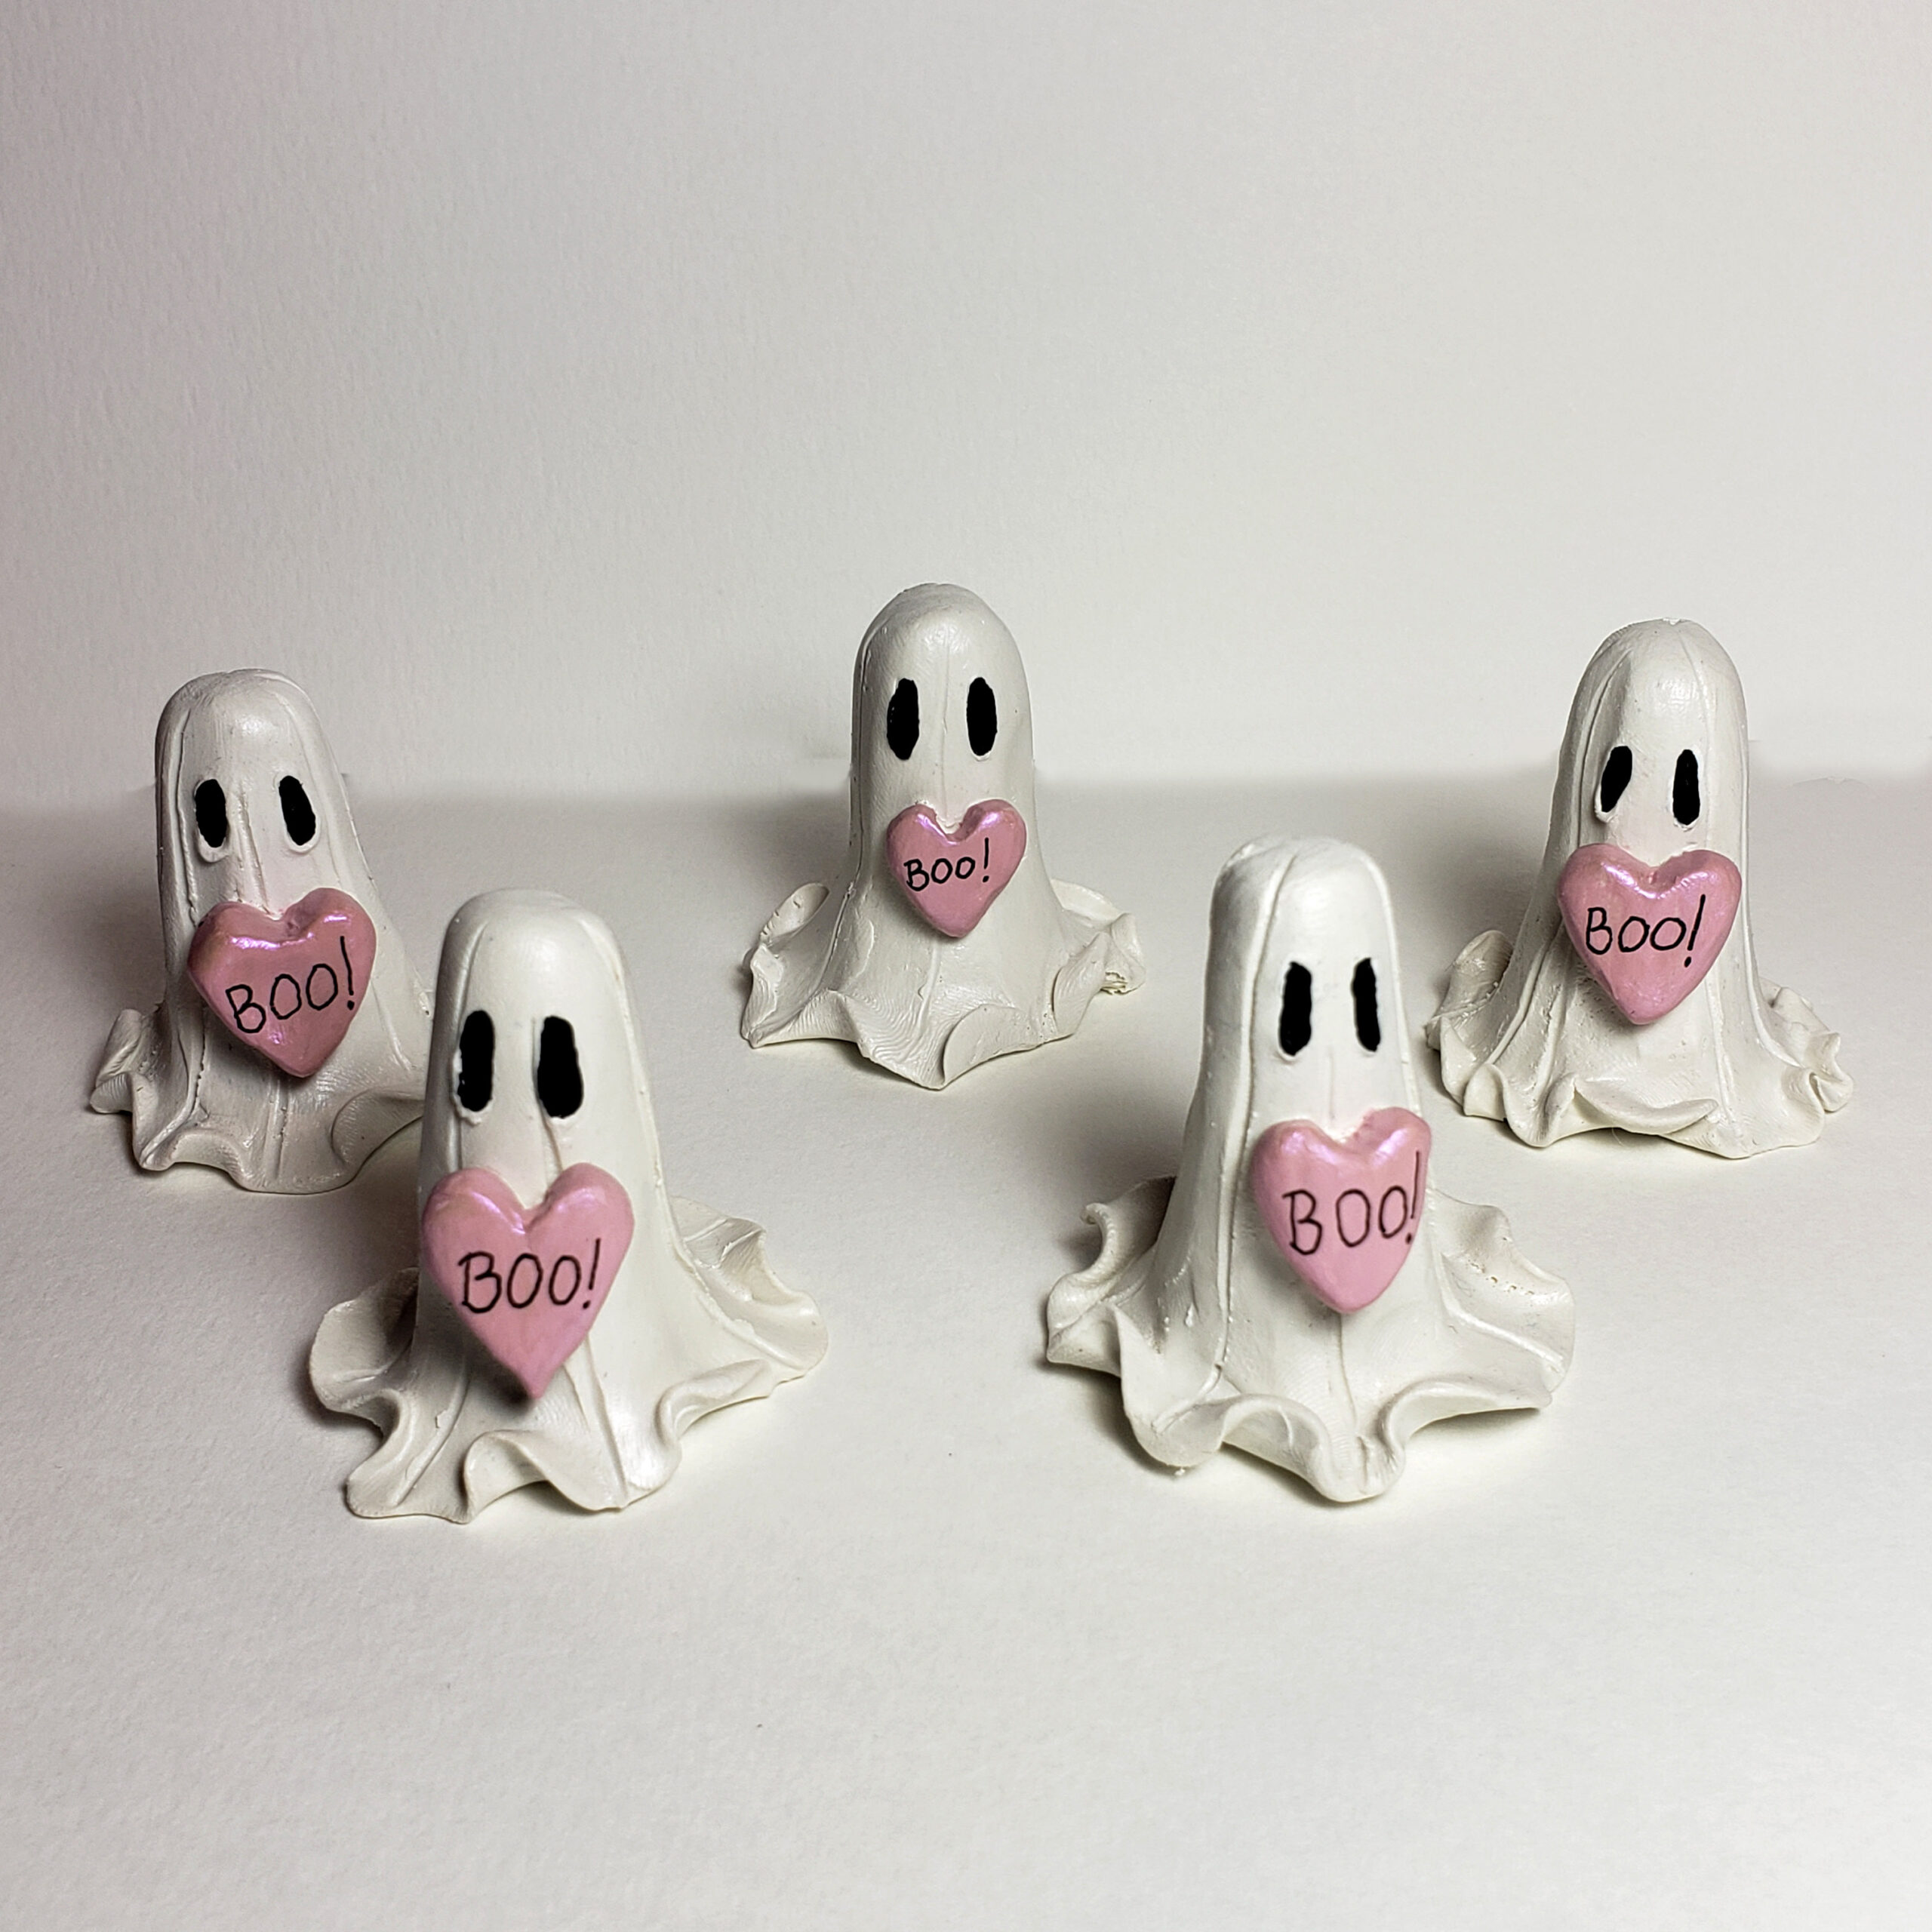 mini-statuettes-with-hearts-white-bg